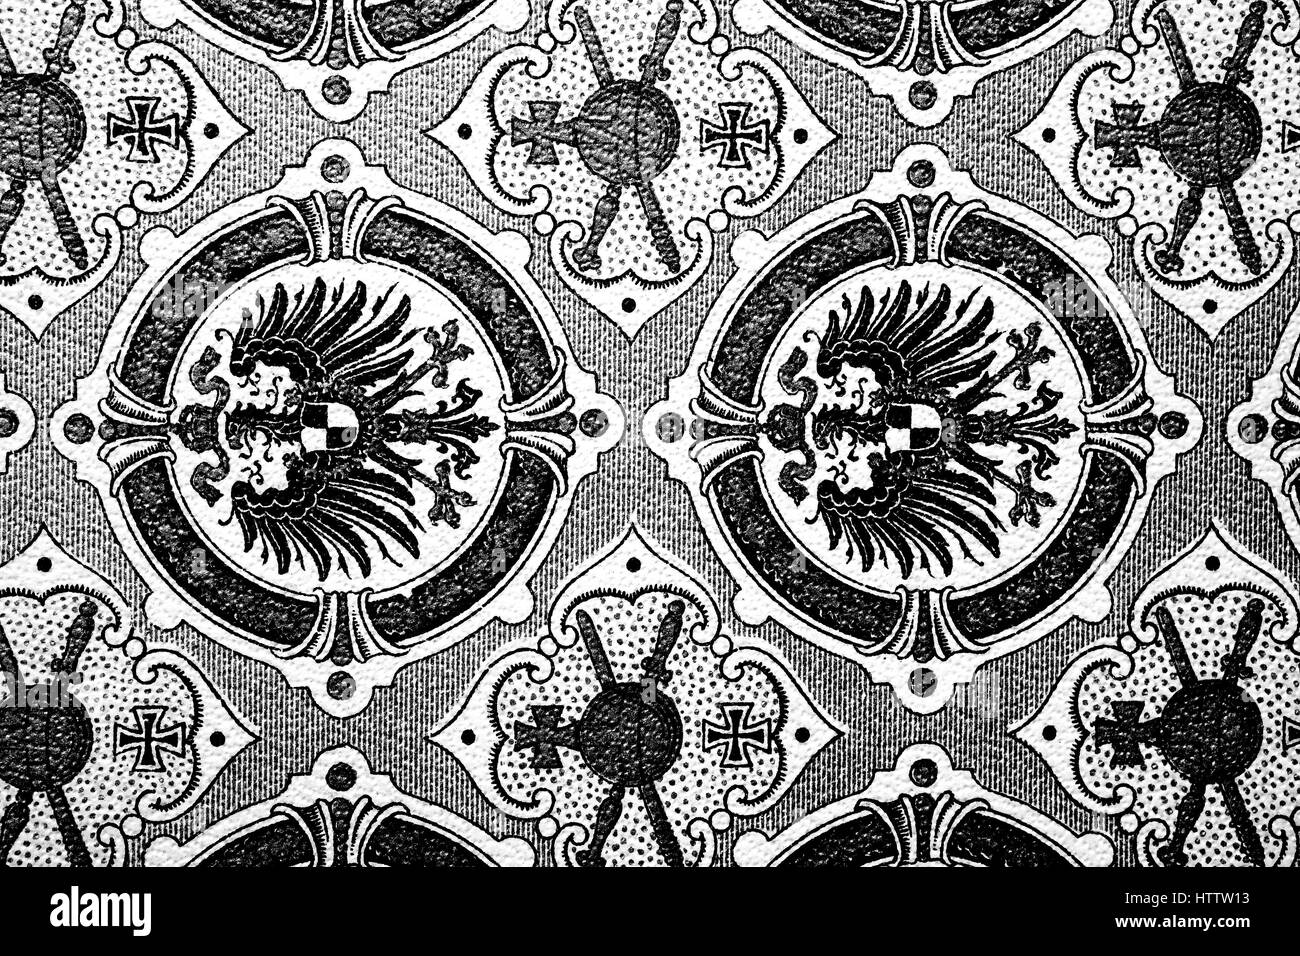 La texture de fond, avec l'Allemand Reichsadler, aigle impérial, Reichsadler, design officiel 1888 - 1918 de l'Empire allemand, la reproduction d'une gravure sur bois à partir de 1882, l'amélioration numérique Banque D'Images